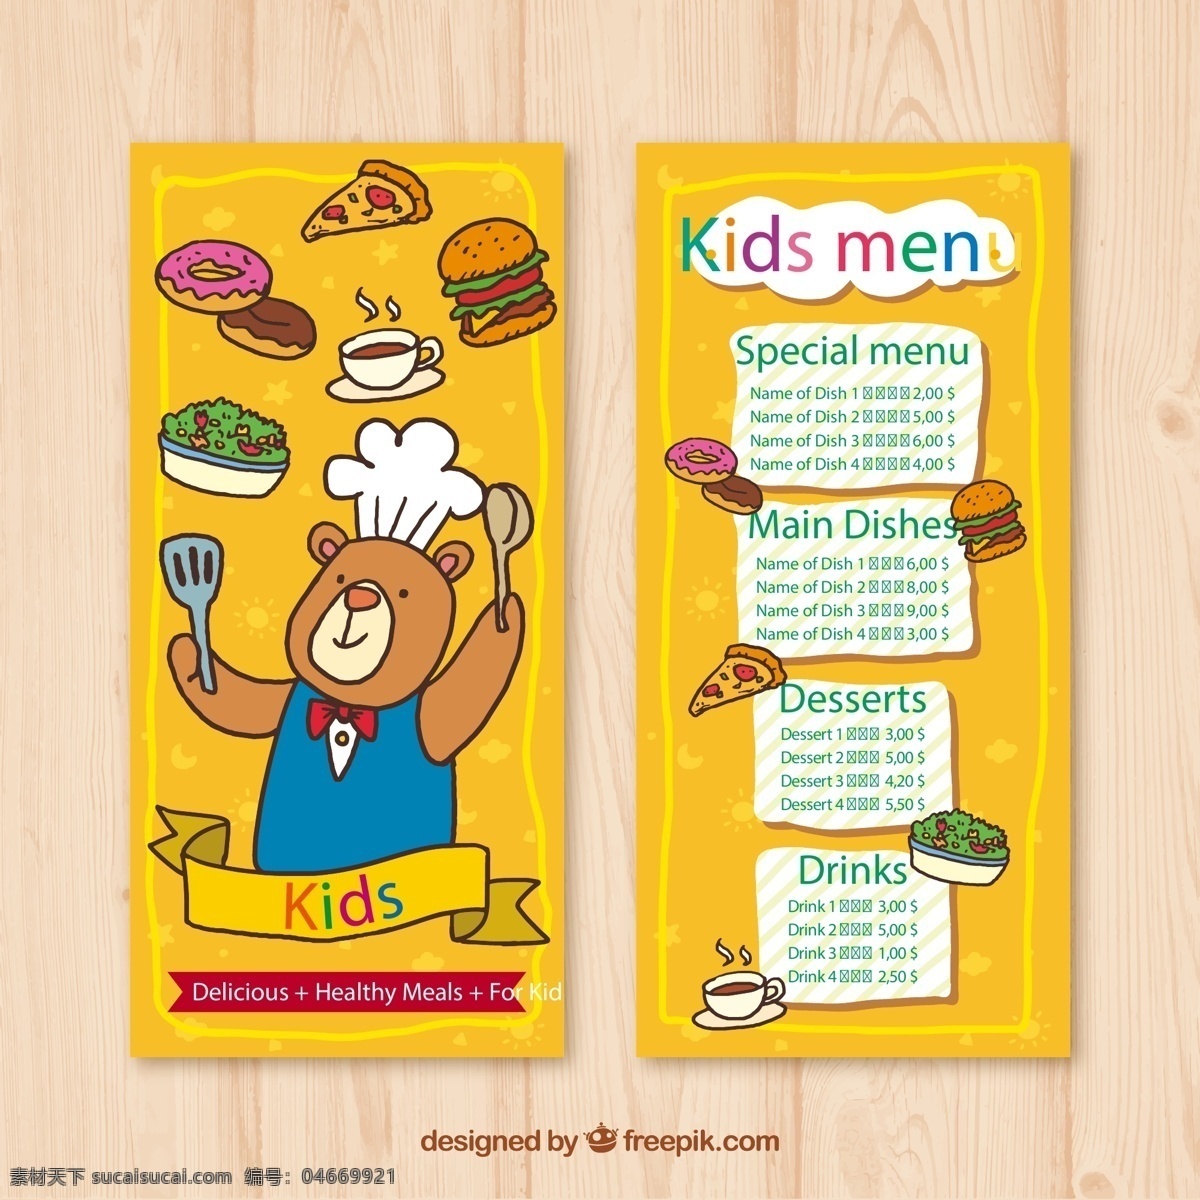 可爱 熊 厨师 儿童 菜单 三角披萨 汉堡包 咖啡 沙拉 甜甜圈 矢量 高清图片